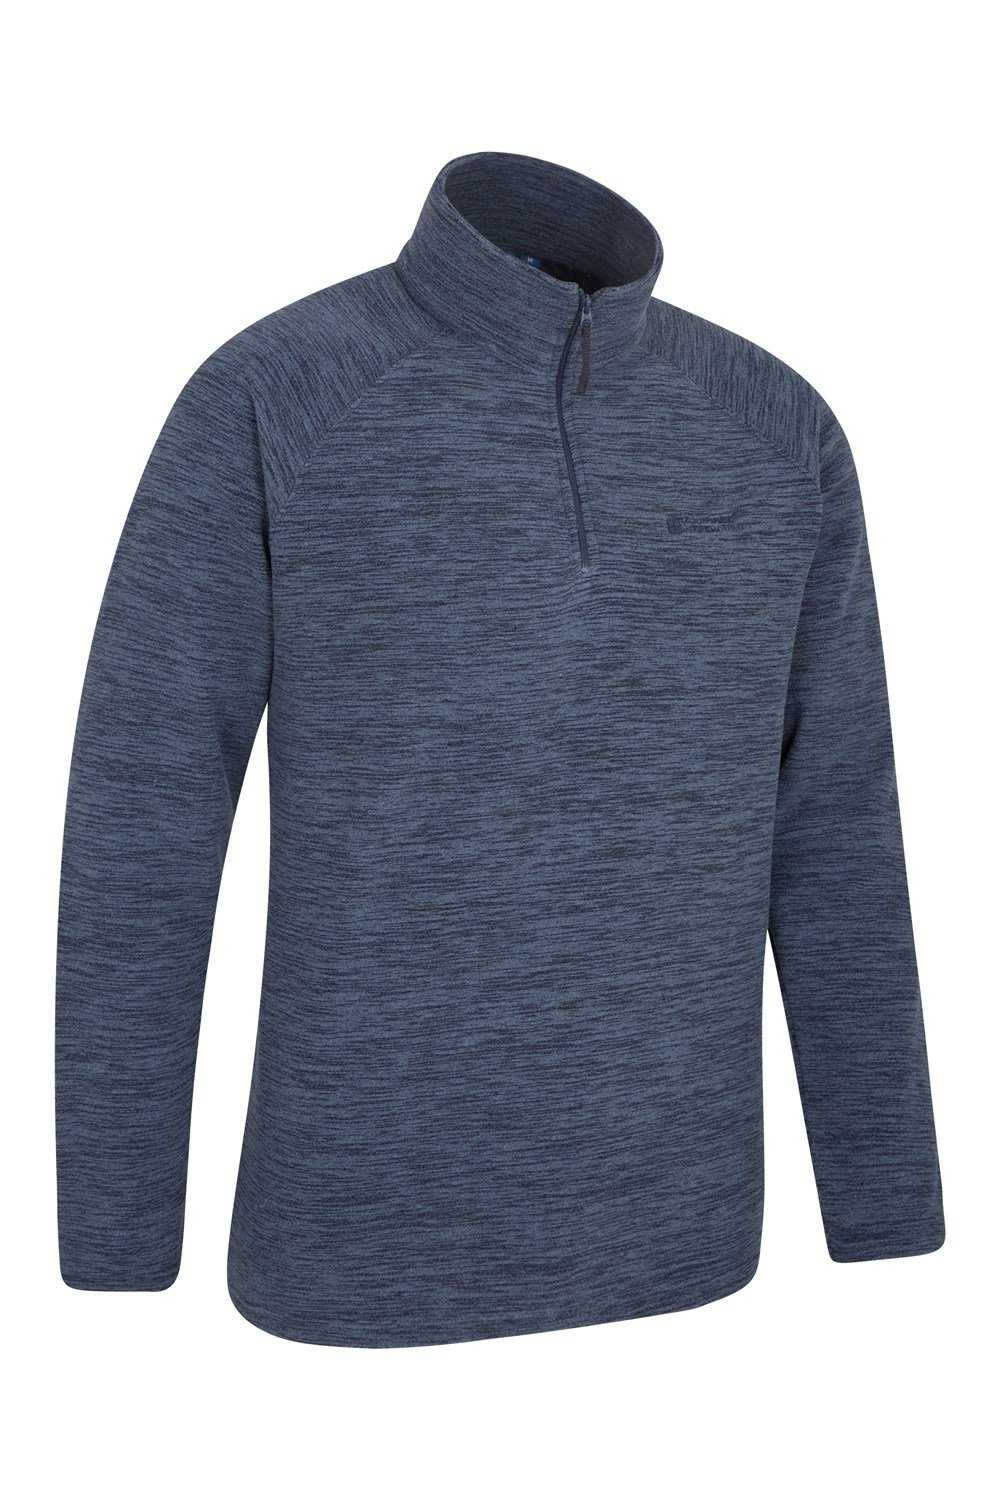 Mountain Warehouse Mens Micro Fleece Top Lightweight Sweater Jumper ...